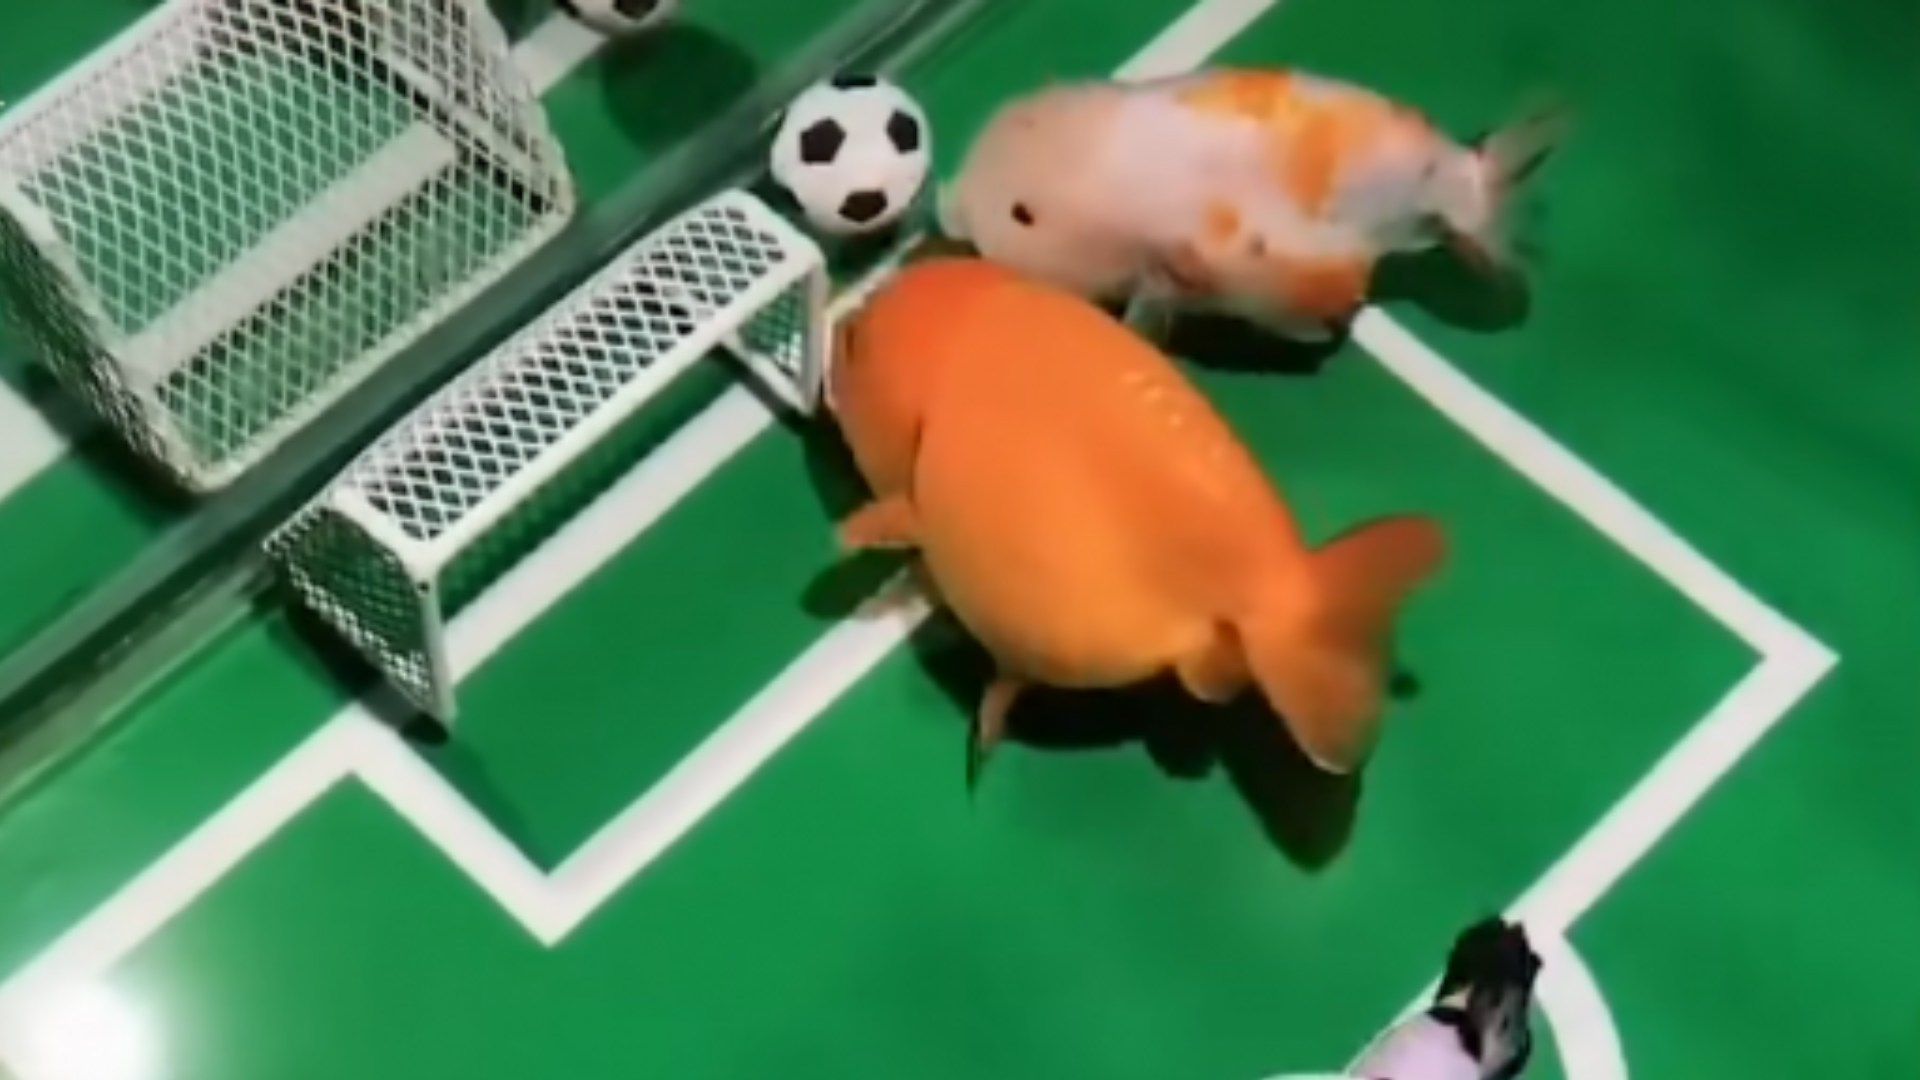 El viral de peces futbolistas que respaldaría a ONG veganista en discusión de Ley de Pesca